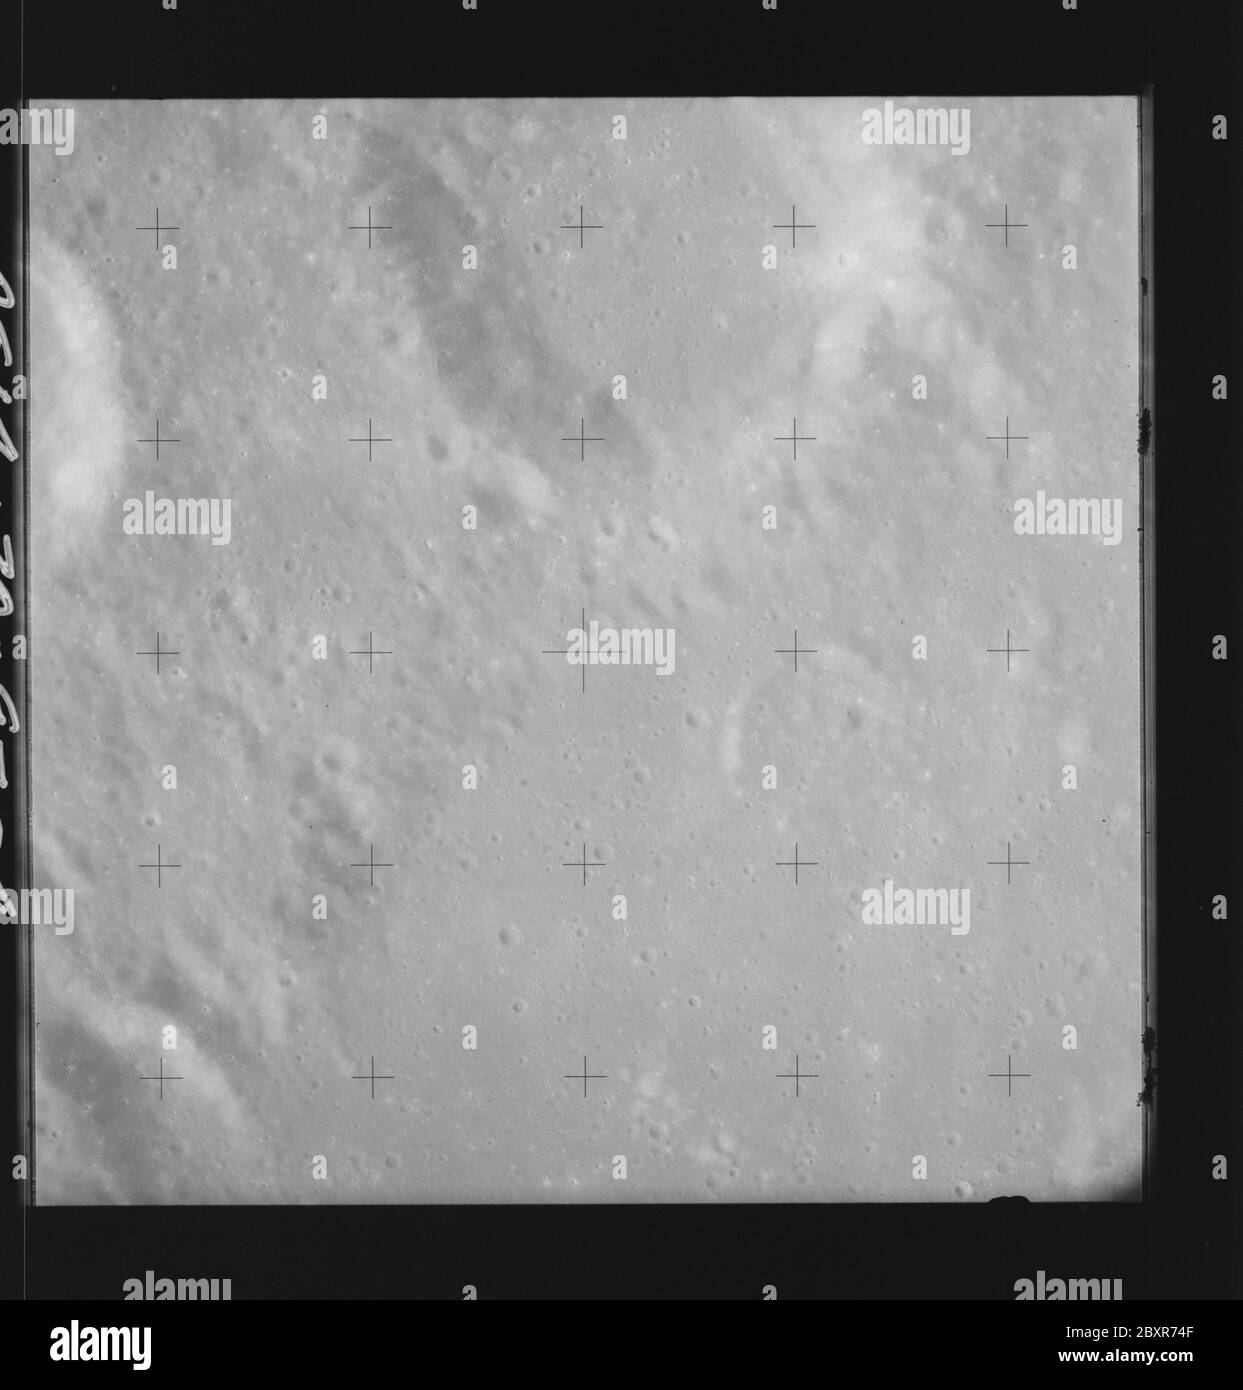 AS14-70-9794 - Apollo 14 - image de la mission Apollo 14 - vue des cratères Halley et Hind.; portée et contenu: La base de données originale décrit ceci comme: Description: Vue des cratères Halley et Hind. Des images ont été prises sur la Révolution 26 de la mission Apollo 14. Le magazine original a été étiqueté Q, le type de film était 3400BW (Panatomic-X, noir et blanc), objectif de 80 mm avec une élévation du soleil de 48 degrés. L'échelle de photo approximative était de 1:1,380,000. La principale point de latence était 7.0S par Longitude 6.0E,avec une inclinaison verticale de la caméra. Descripteurs : vol Apollo 14, Lune (planète) catégories : observations lunaires Or Banque D'Images